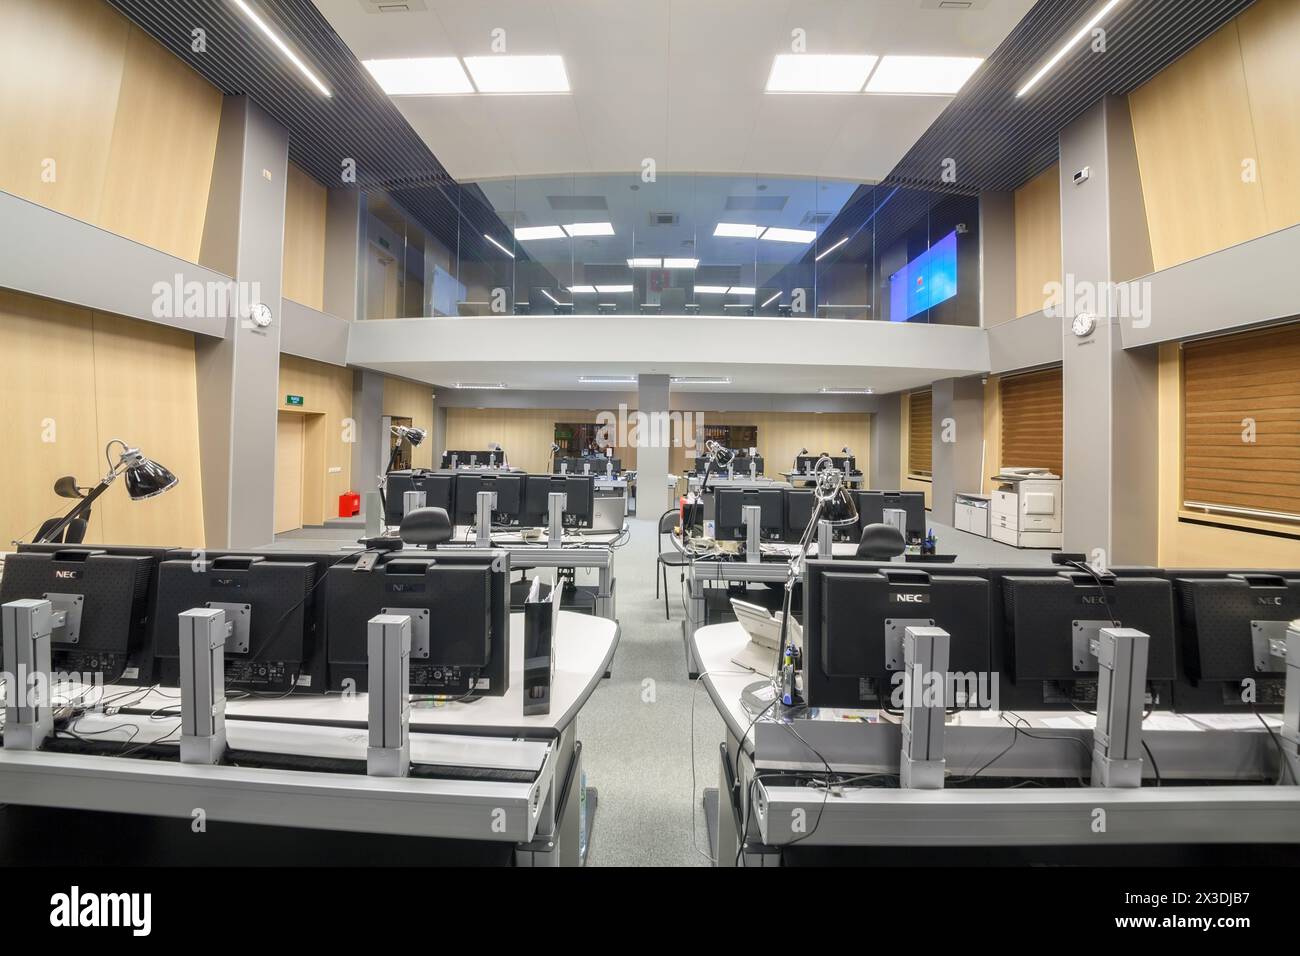 MOSCOU, RUSSIE - février 04, 2016 : intérieur du Centre TSODD, surveillance et gestion opérationnelle du trafic passagers Banque D'Images